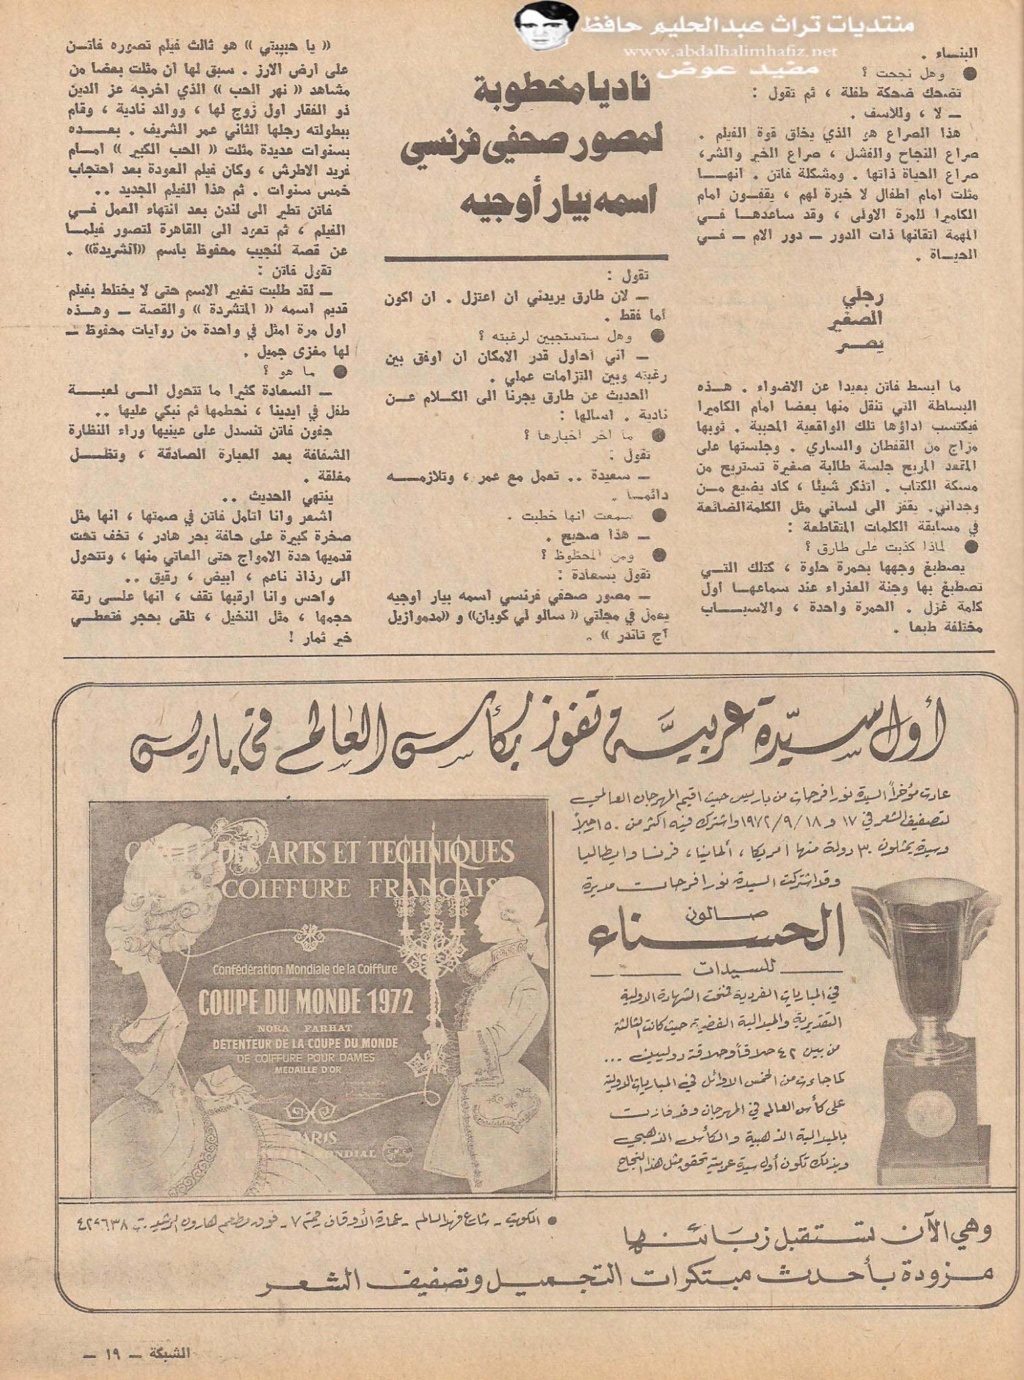 مقال صحفي : فاتن حمامة حبيبة في لبنان بدلا من سعاد حسني 1972 م 488